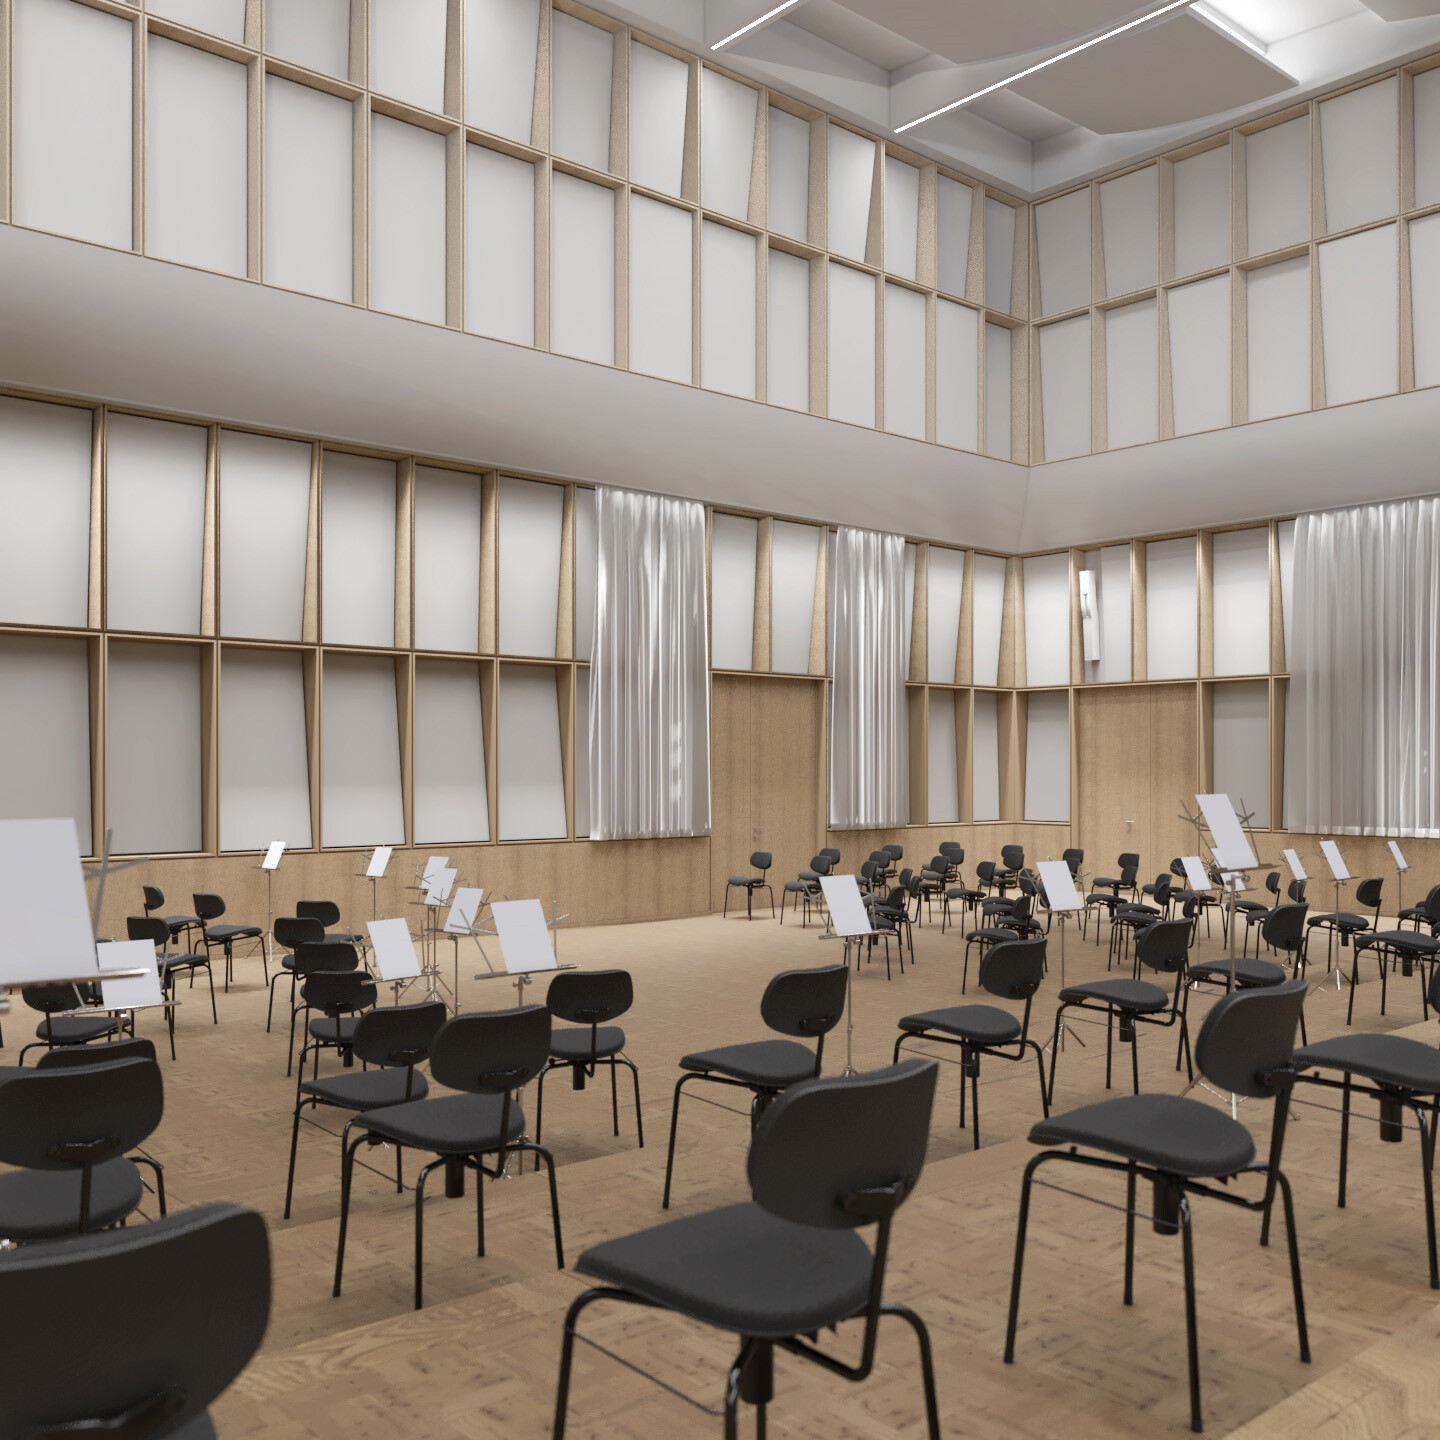 Visualisierung des Orchesterprobensaals. Ein heller großer Raum mit viel Holz